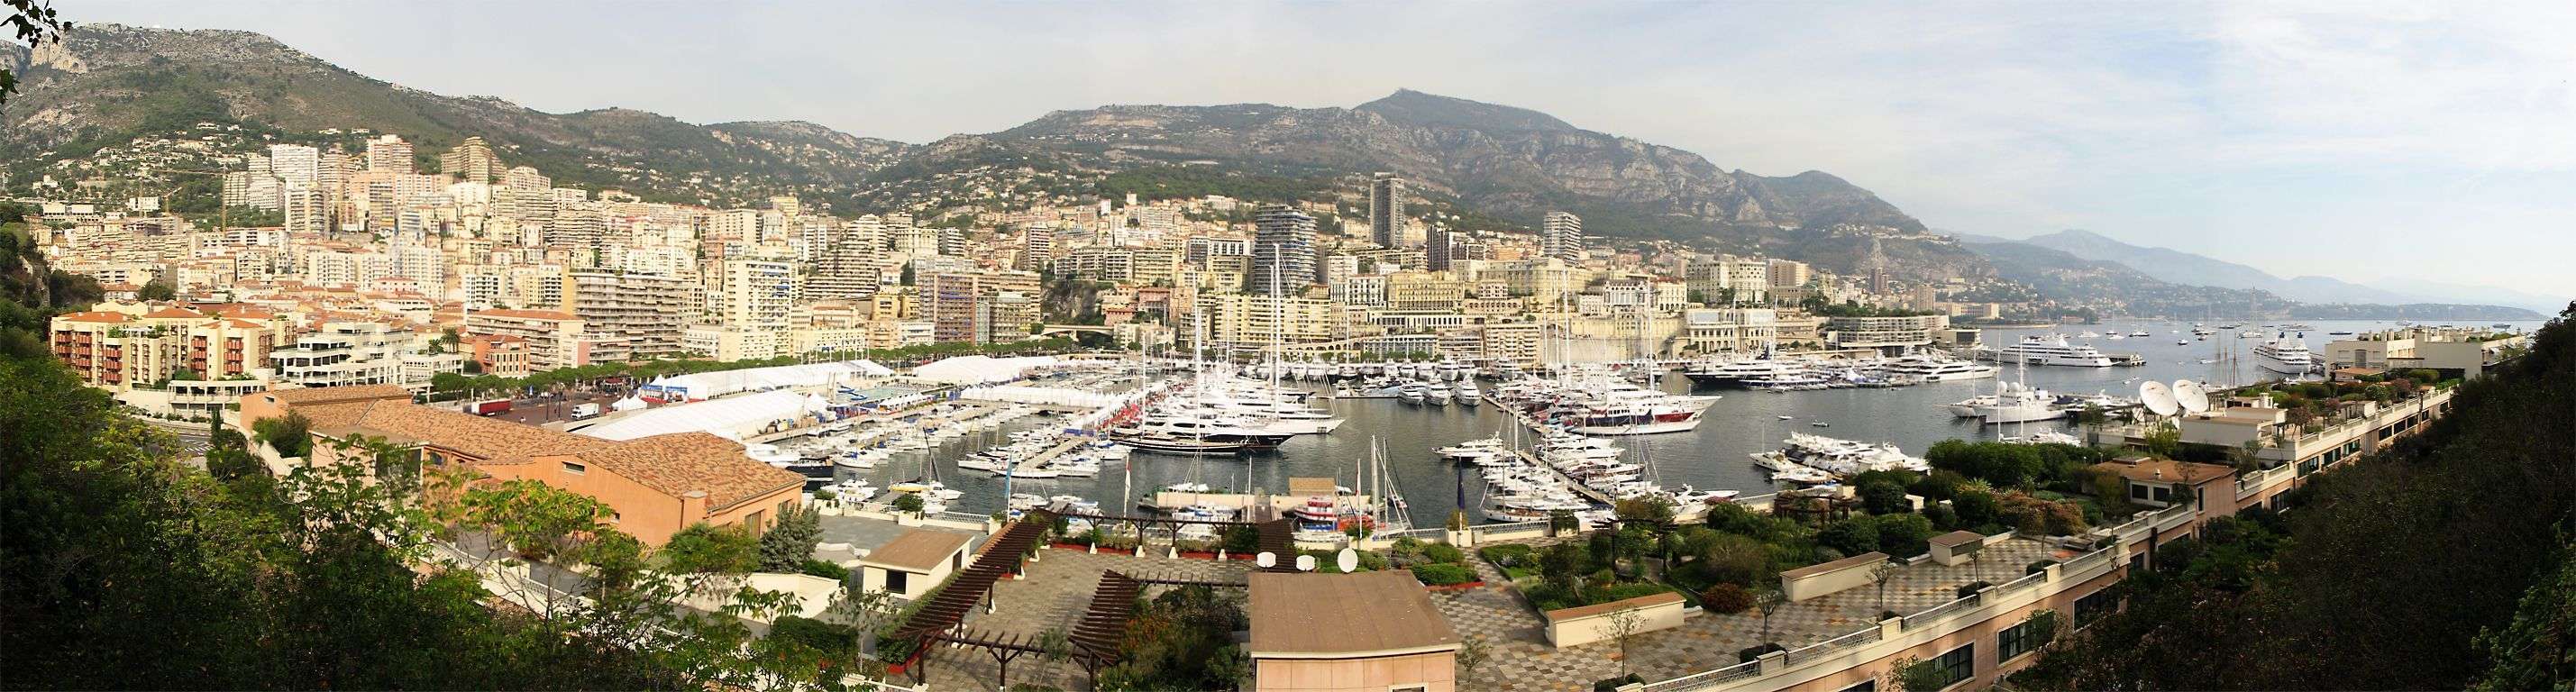 Monaco01